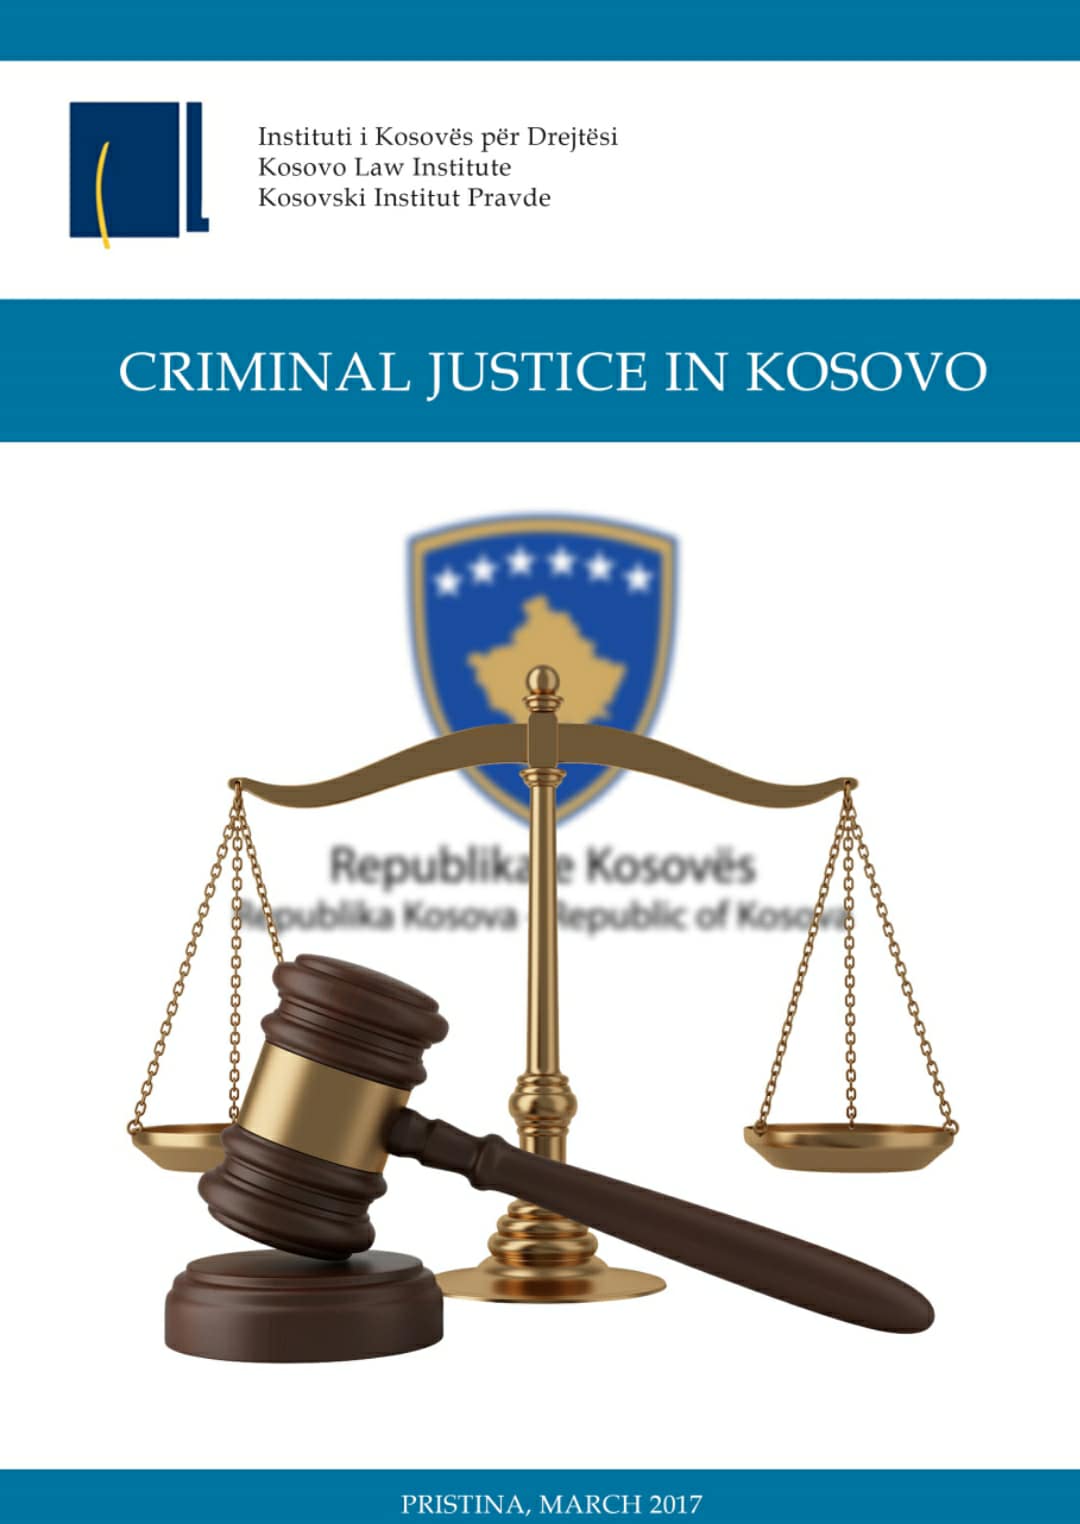 Sistemi i Drejtësisë në Kosovë